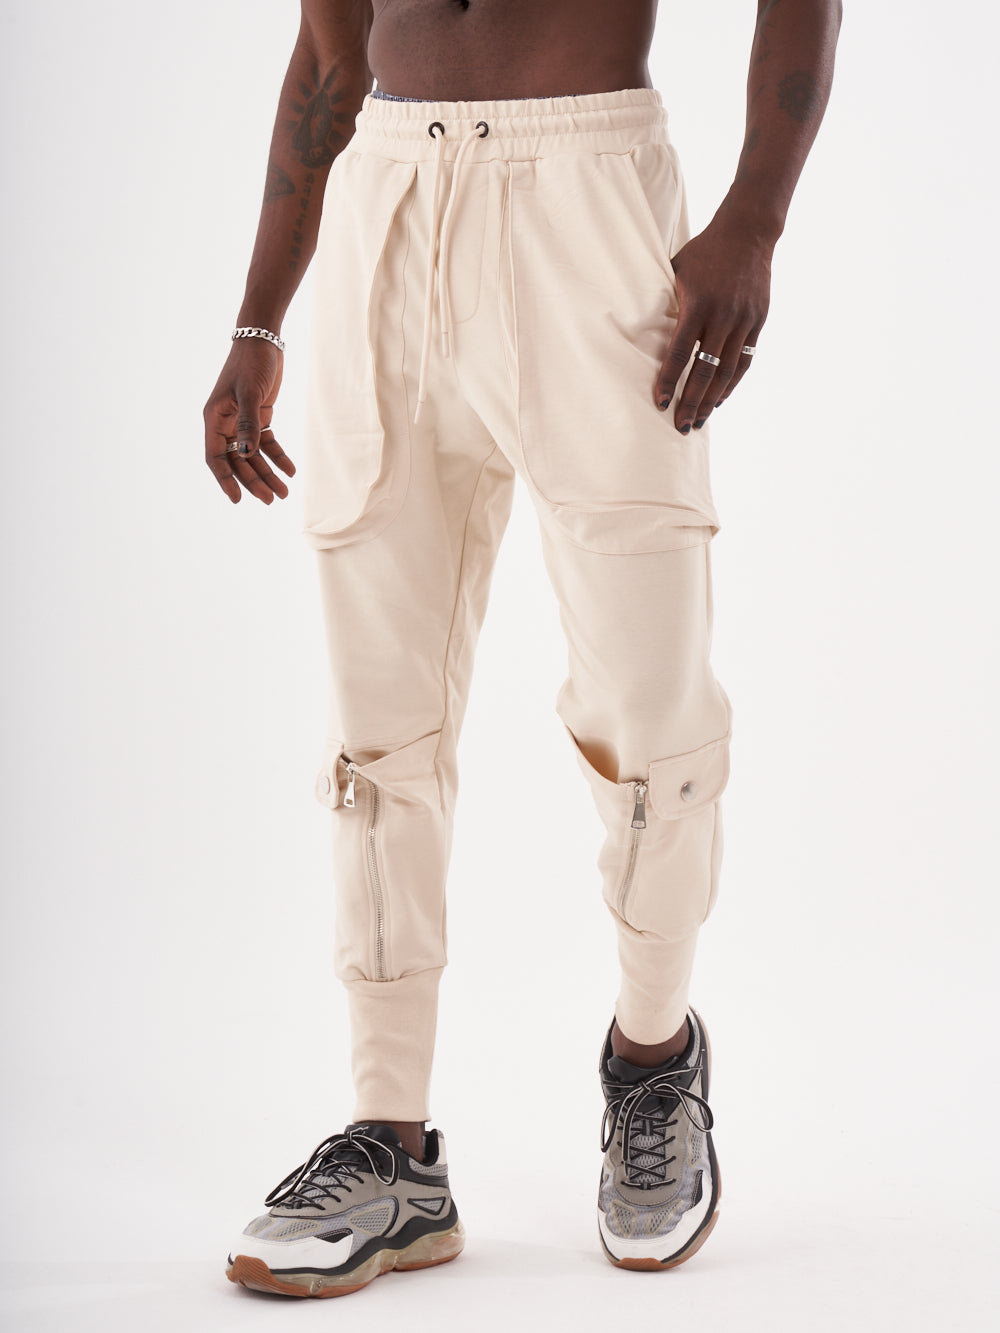 Joggers & Sweatpants Men - Style for SERNES Streetwear